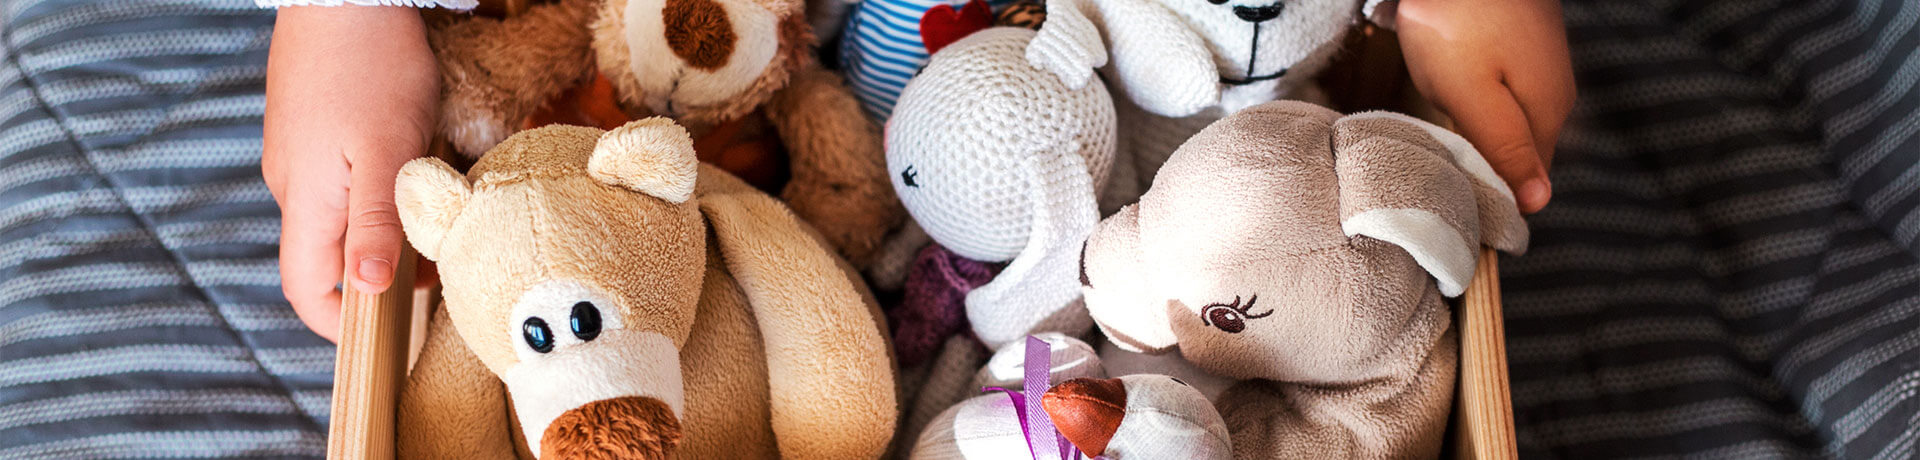 Sachen im Kinderzimmer aufräumen bietet Haushaltshilfe Hamburg-Winterhude